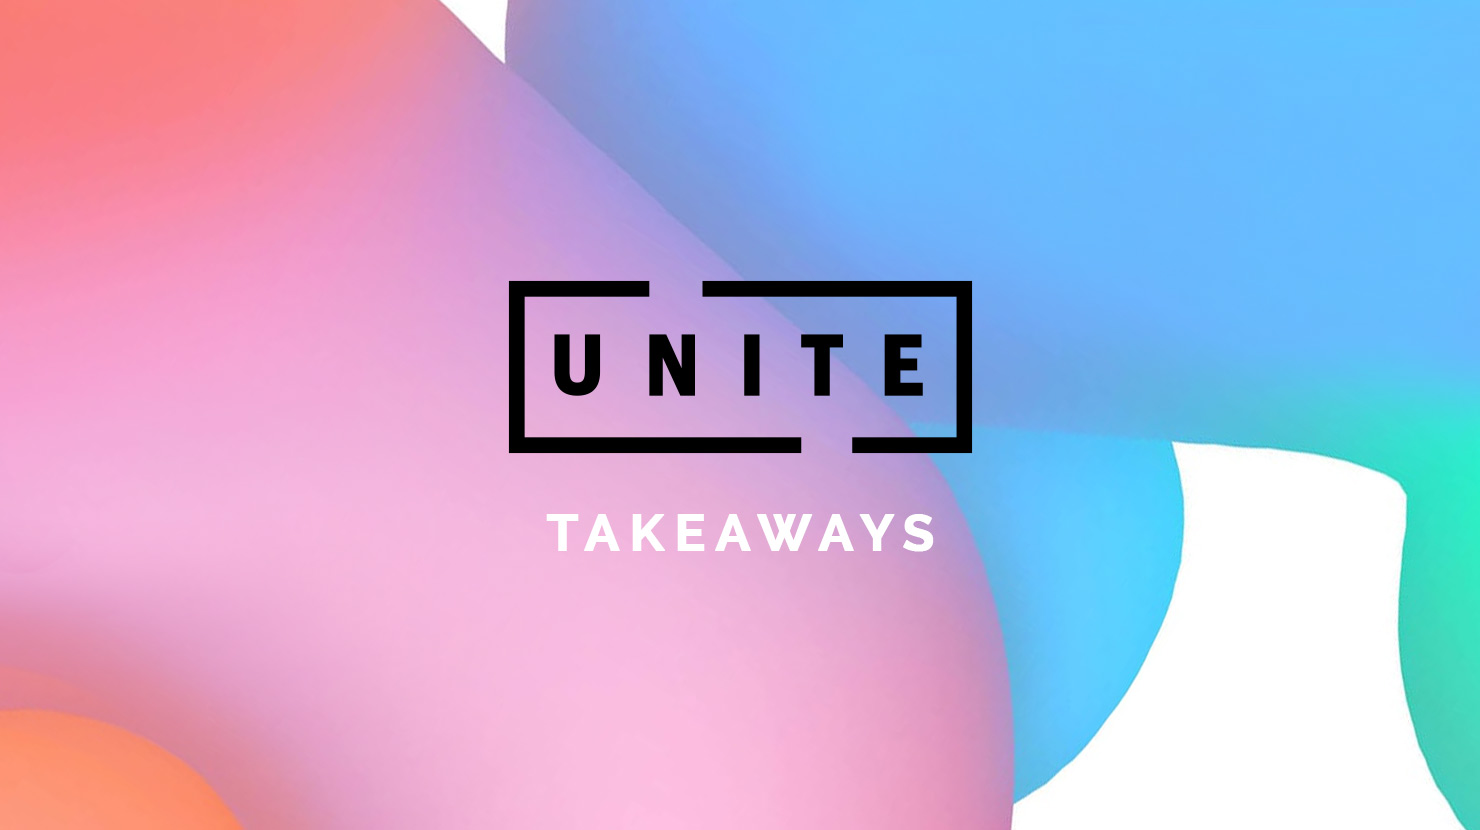 Takeaways from UNITE 2018